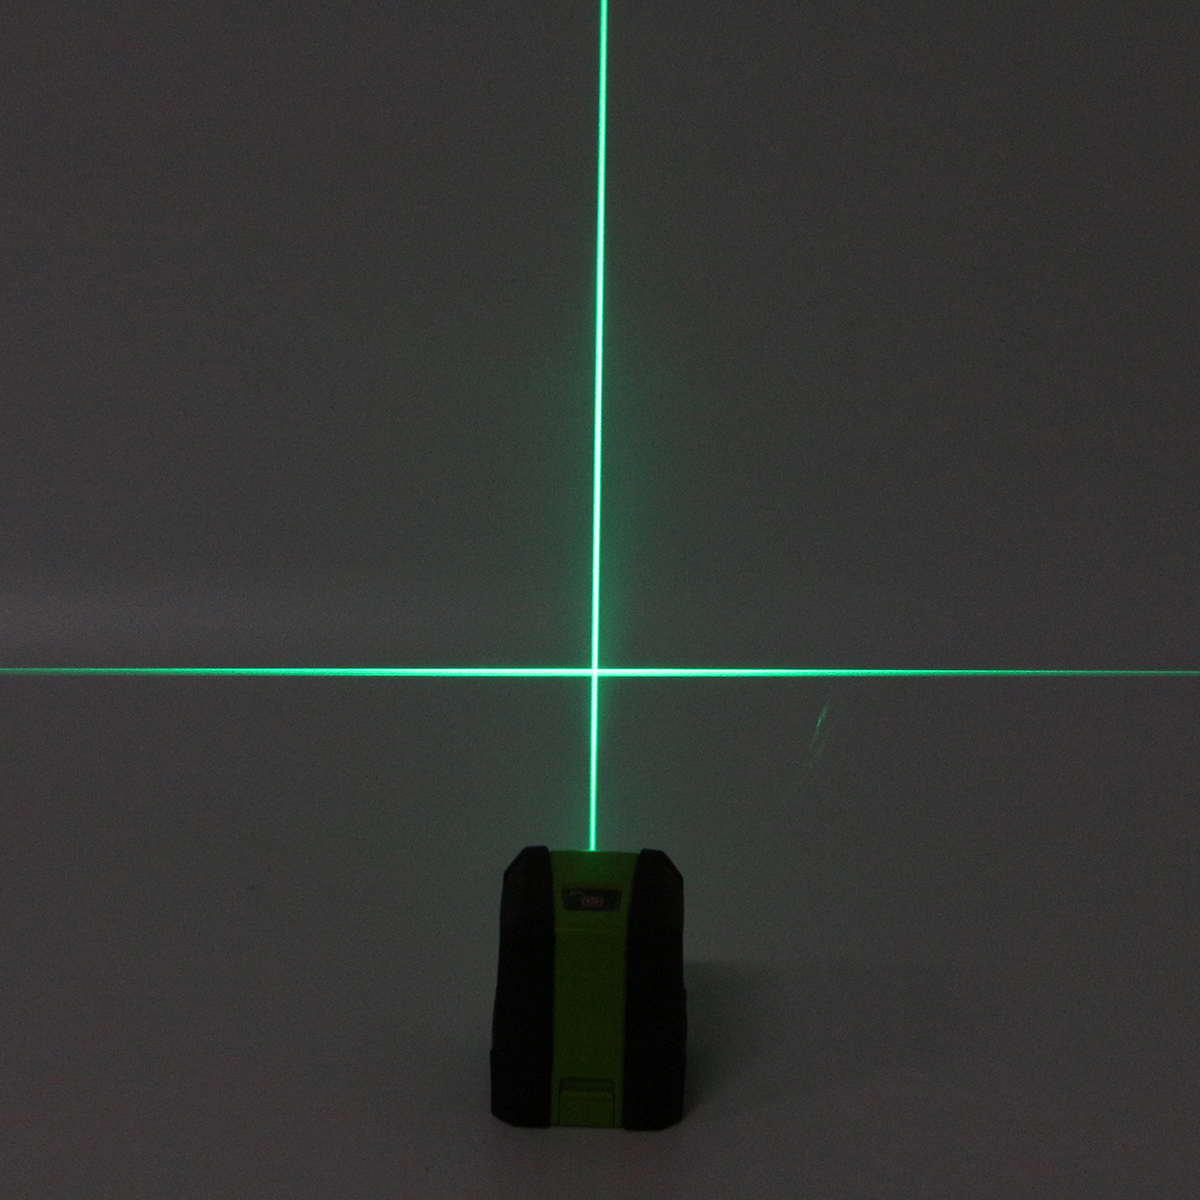 360deg-Rotary-2-Line-Laser-Self-Leveling-Vertical-Horizontal-Level-Green-Measure-Laser-Level-1274189-9